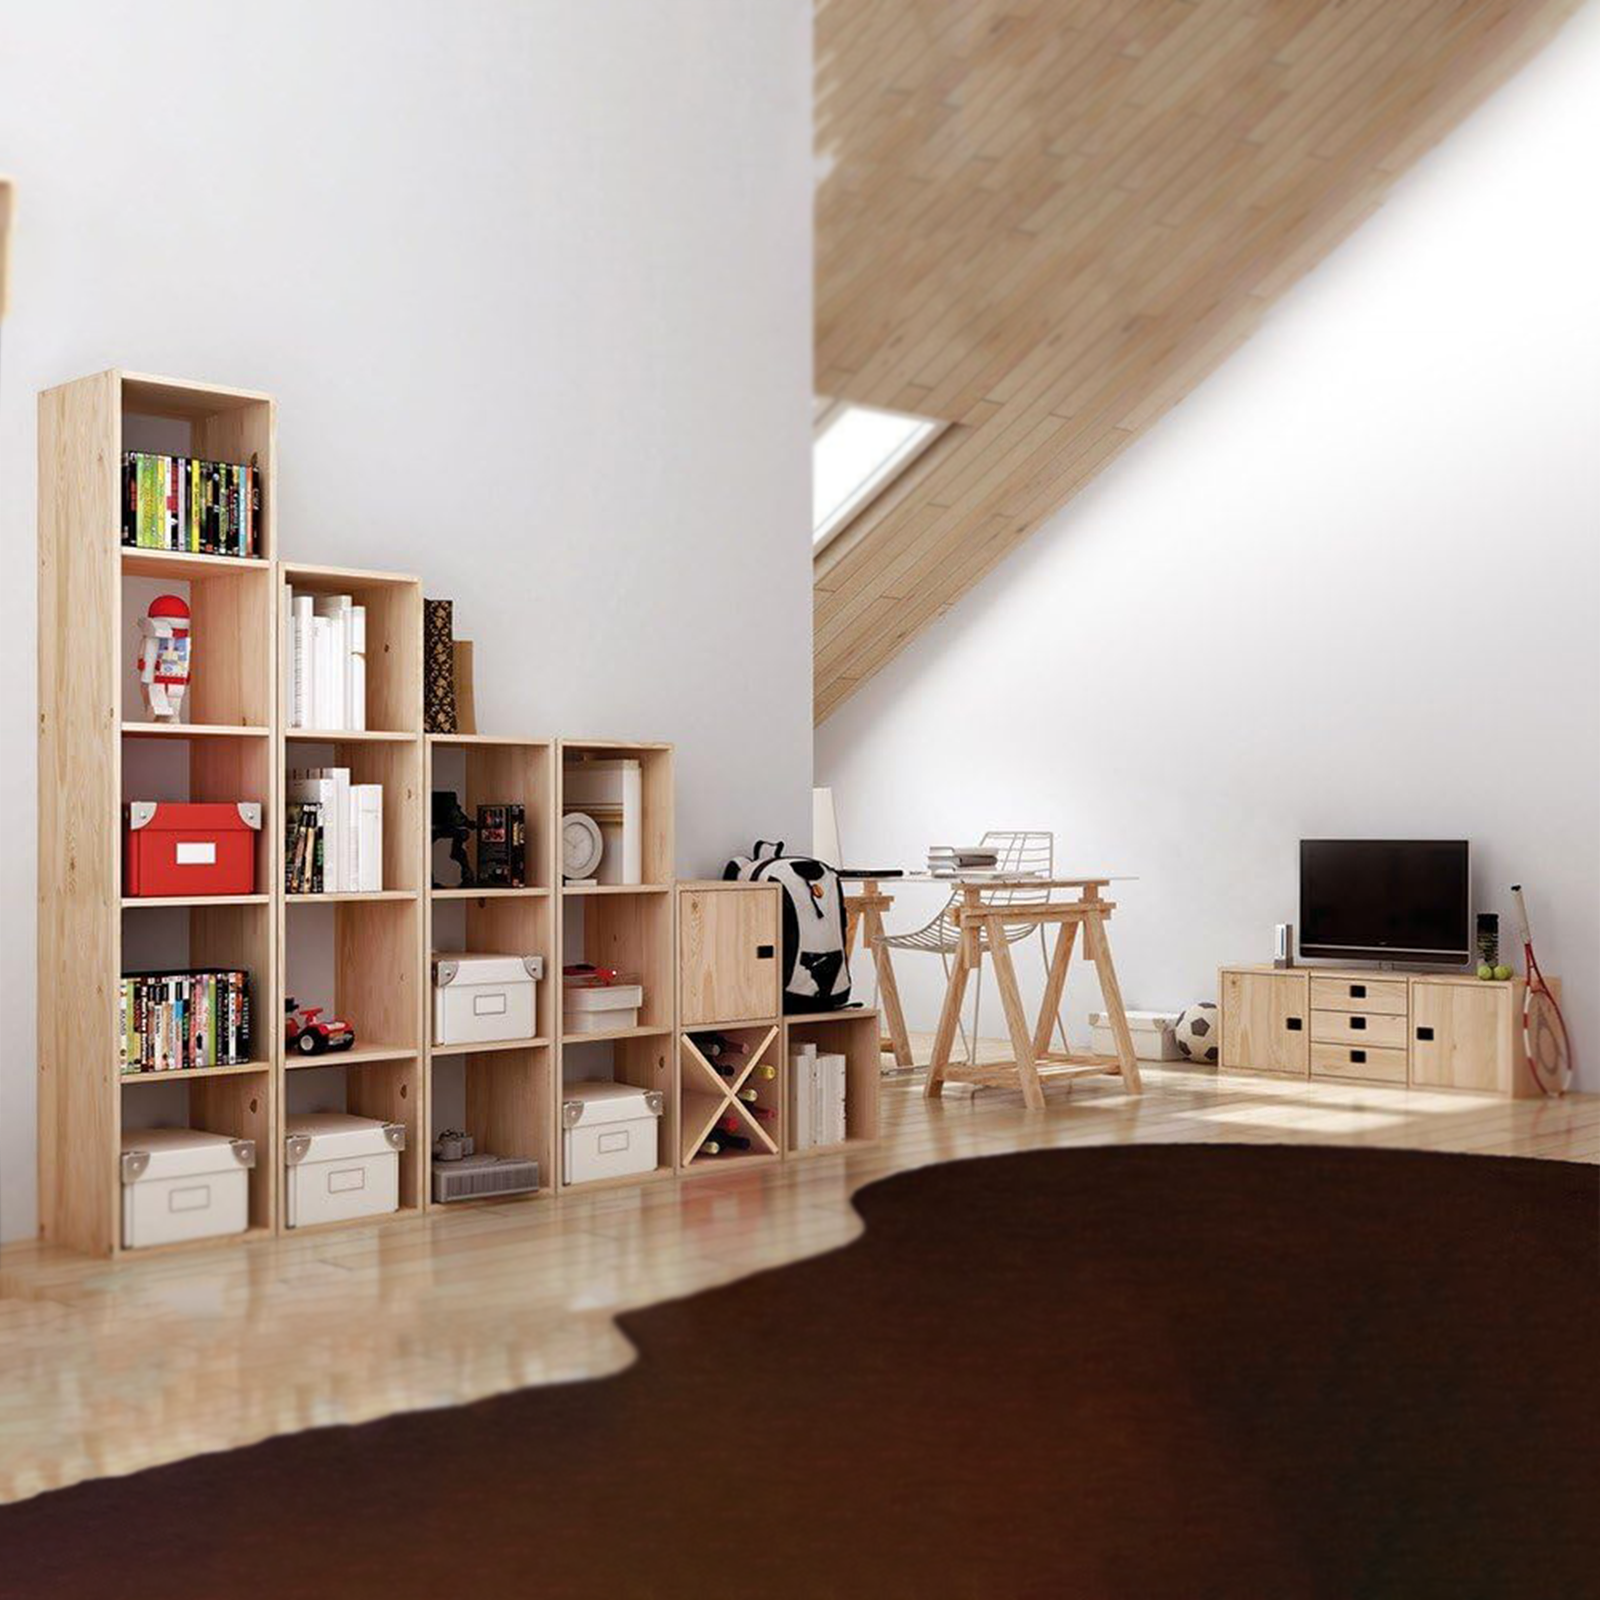 Libreria componibile in legno Cubo scaffale modulare da muro con vani